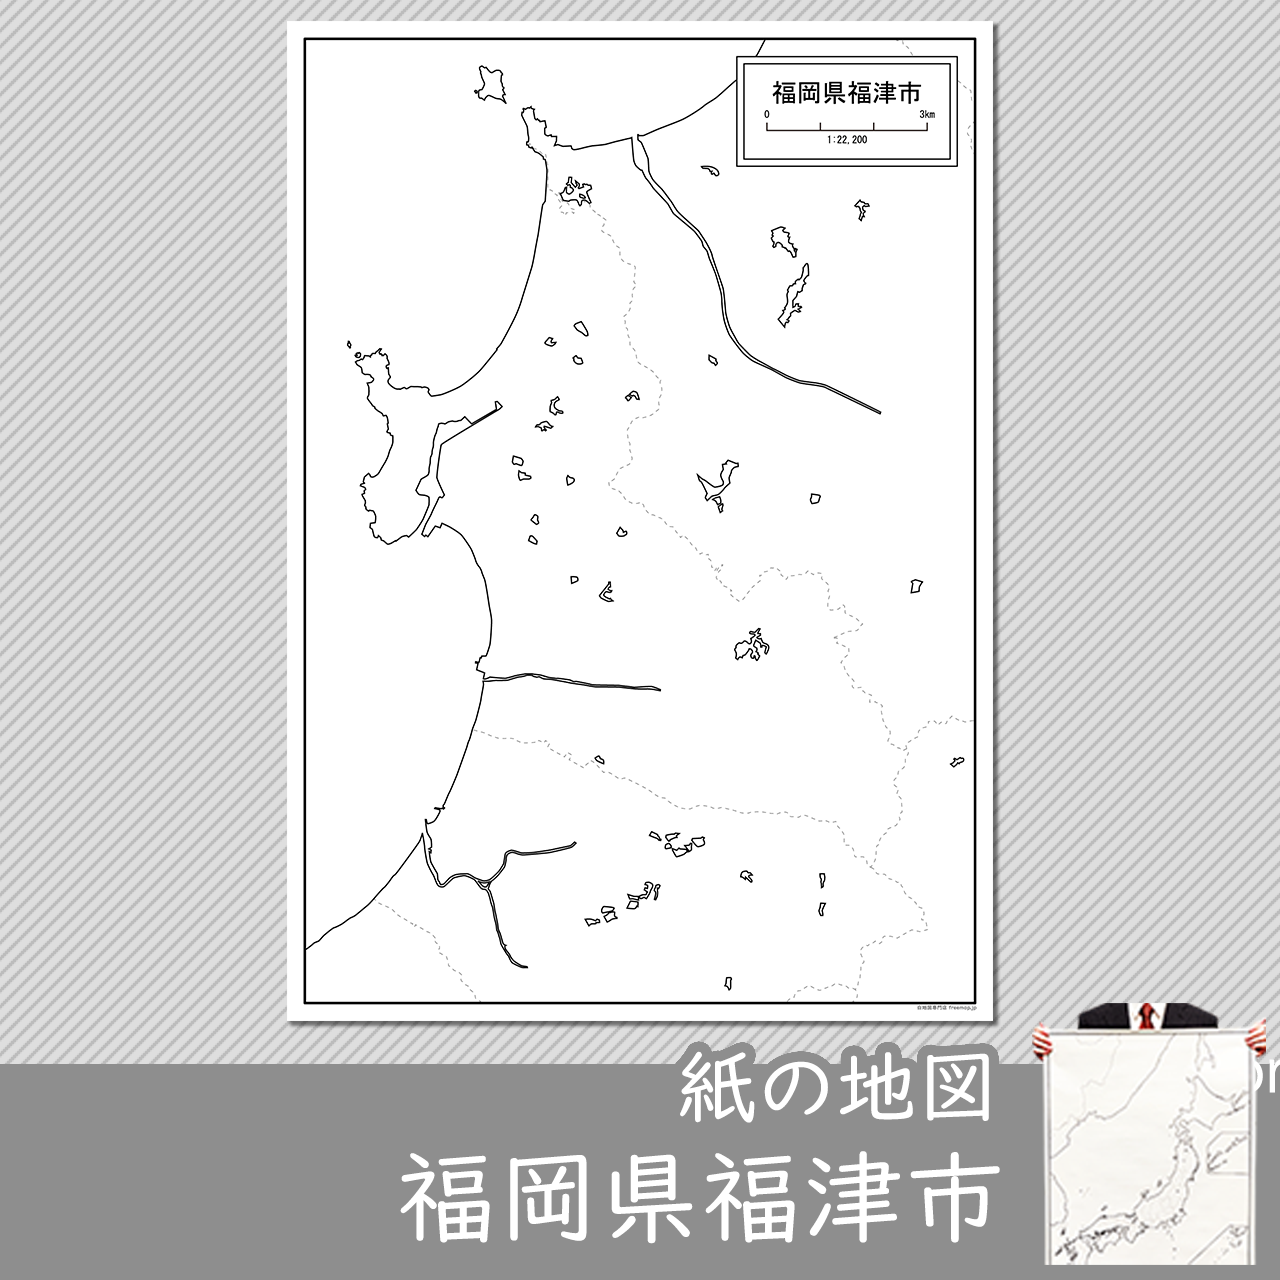 福津市の紙の白地図のサムネイル